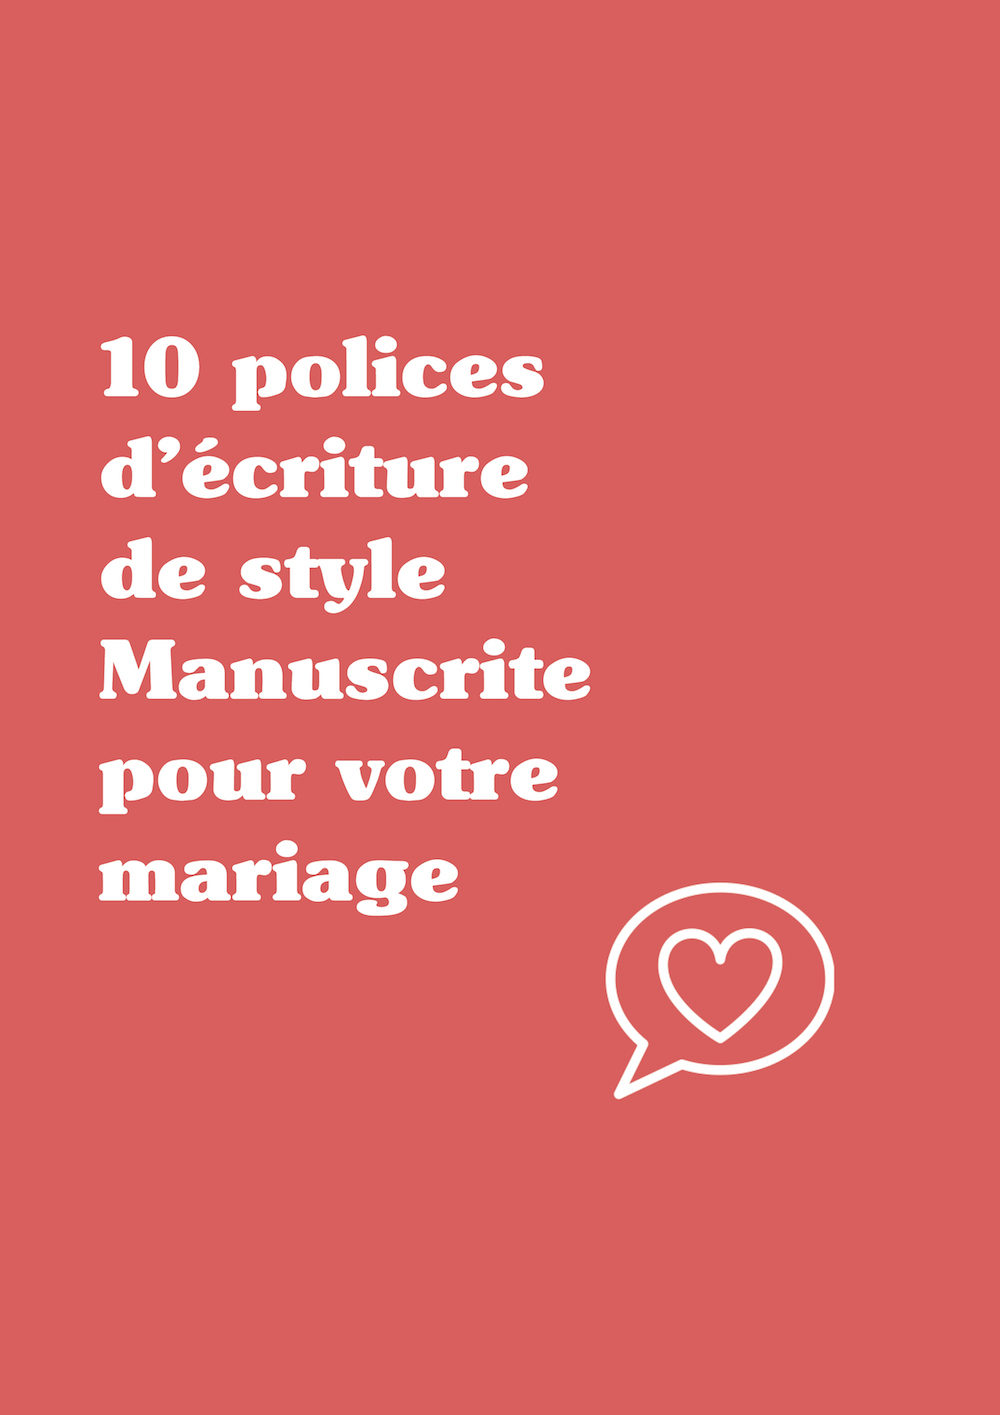 10 polices d'écriture de style Manuscrite pour votre mariage - Blog Mariage Madame C